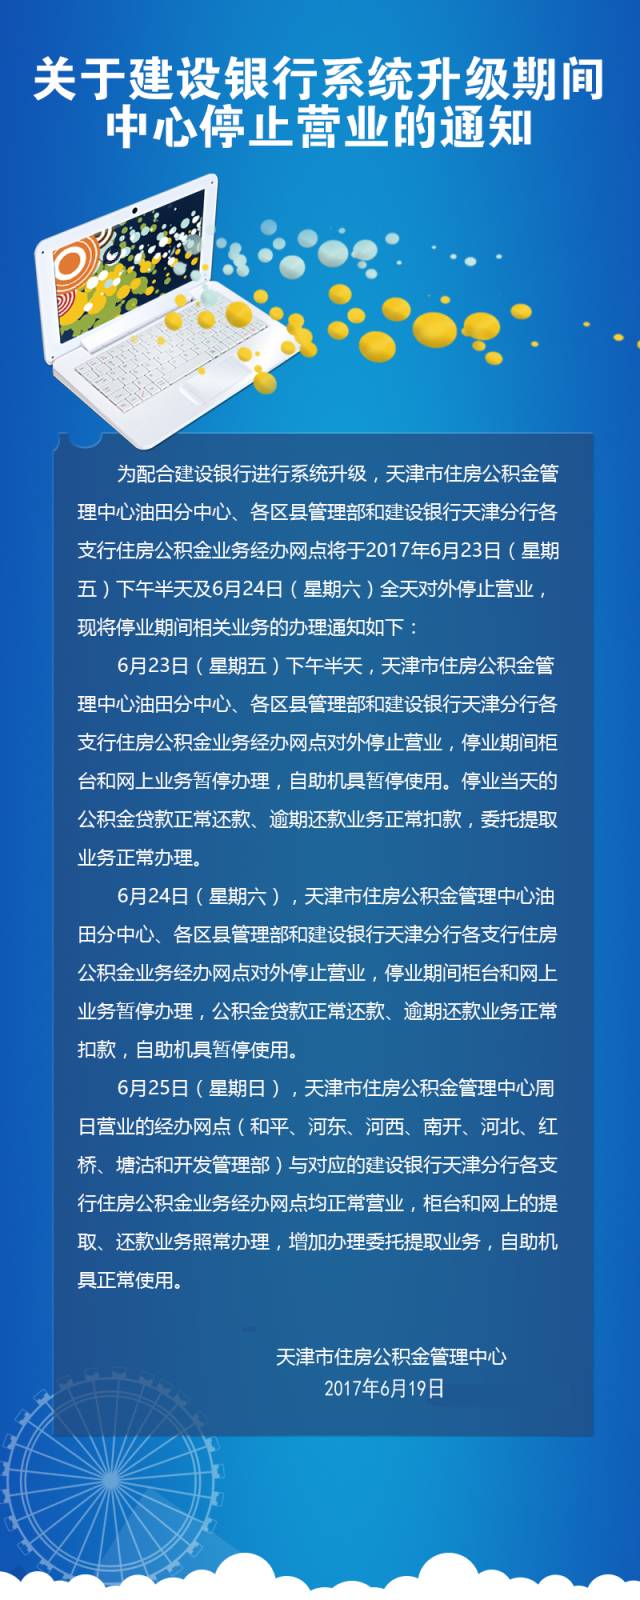 天津住房公积金管理中心23日下午、24日停止营业 